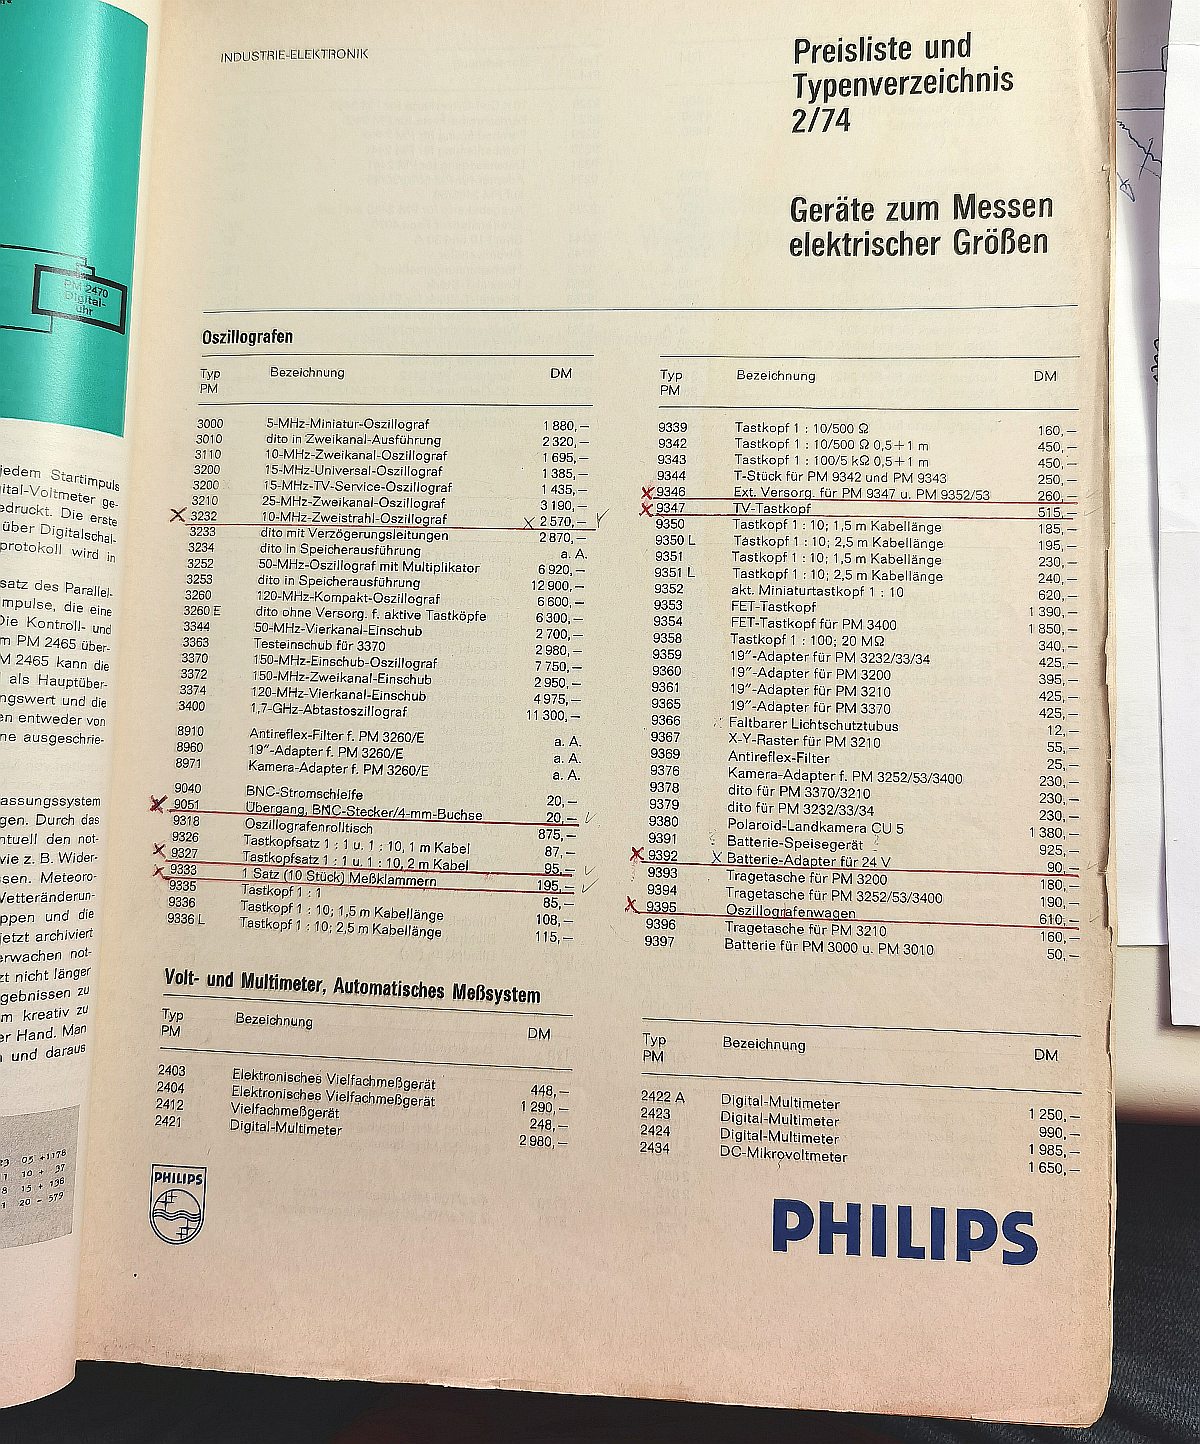 Philips Preisliste Februar 1974.jpg